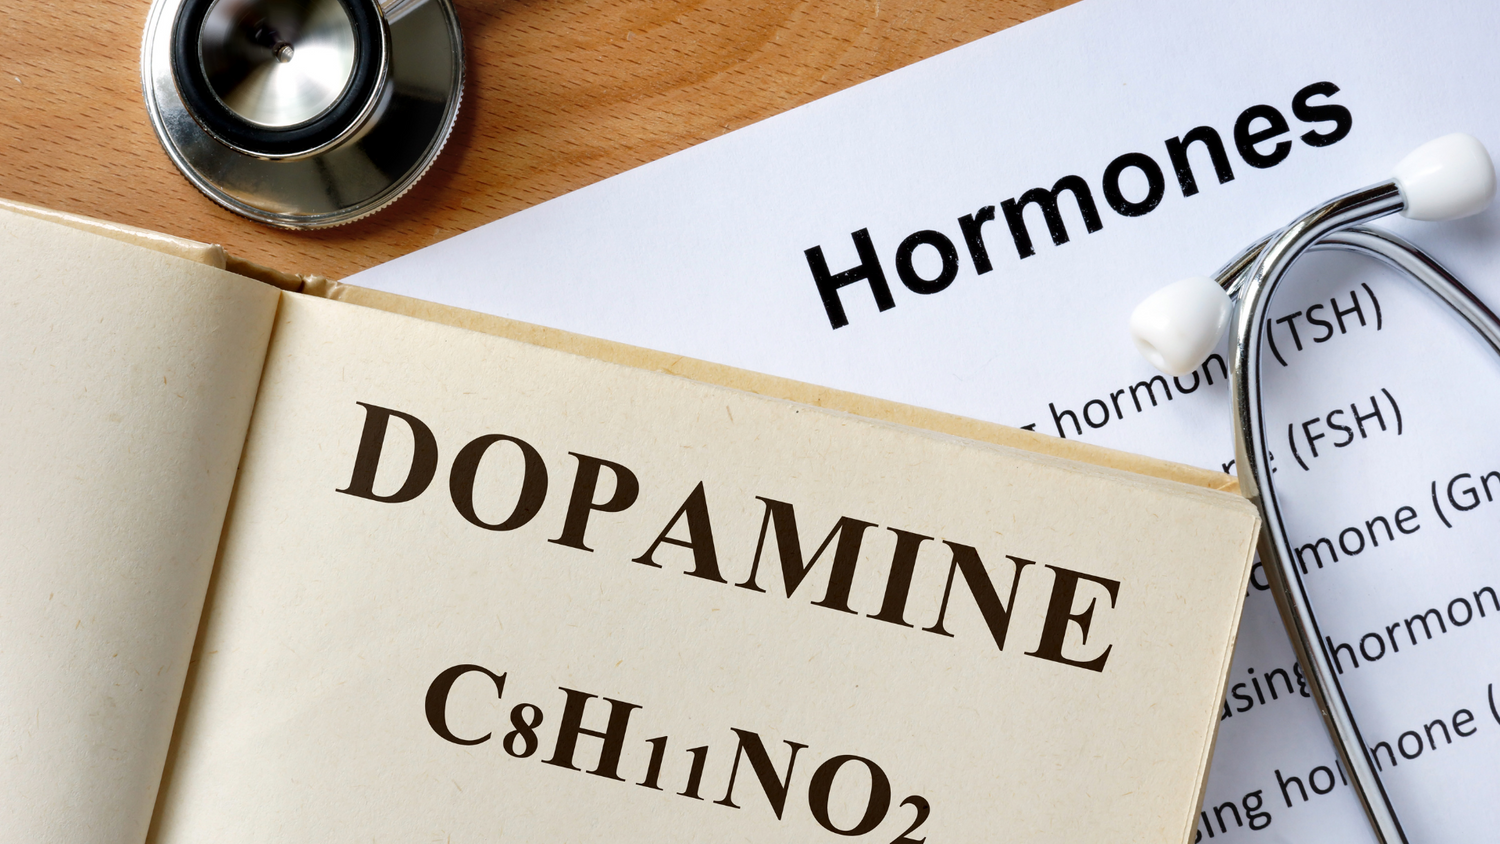 Livre ouvert avec écrit le mot dopamine et dessous le nom de la molécule. Sous le livre une feuille avec écrit "hormones". Posé sur la feuille l'embout du stéthoscope d'un médecin.